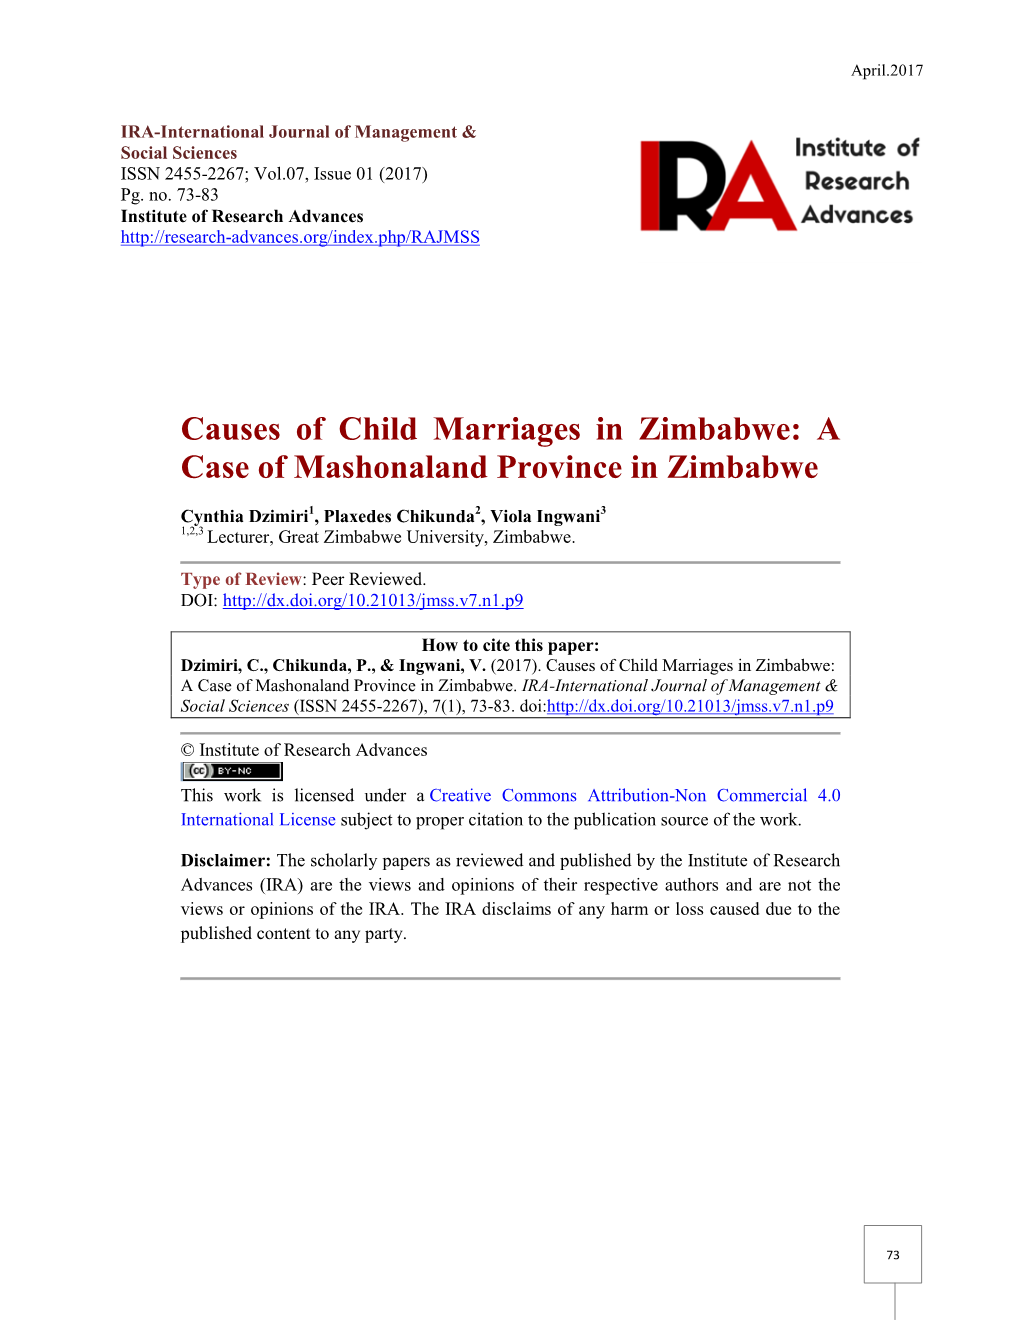 Causes of Child Marriages in Zimbabwe: a Case of Mashonaland Province in Zimbabwe